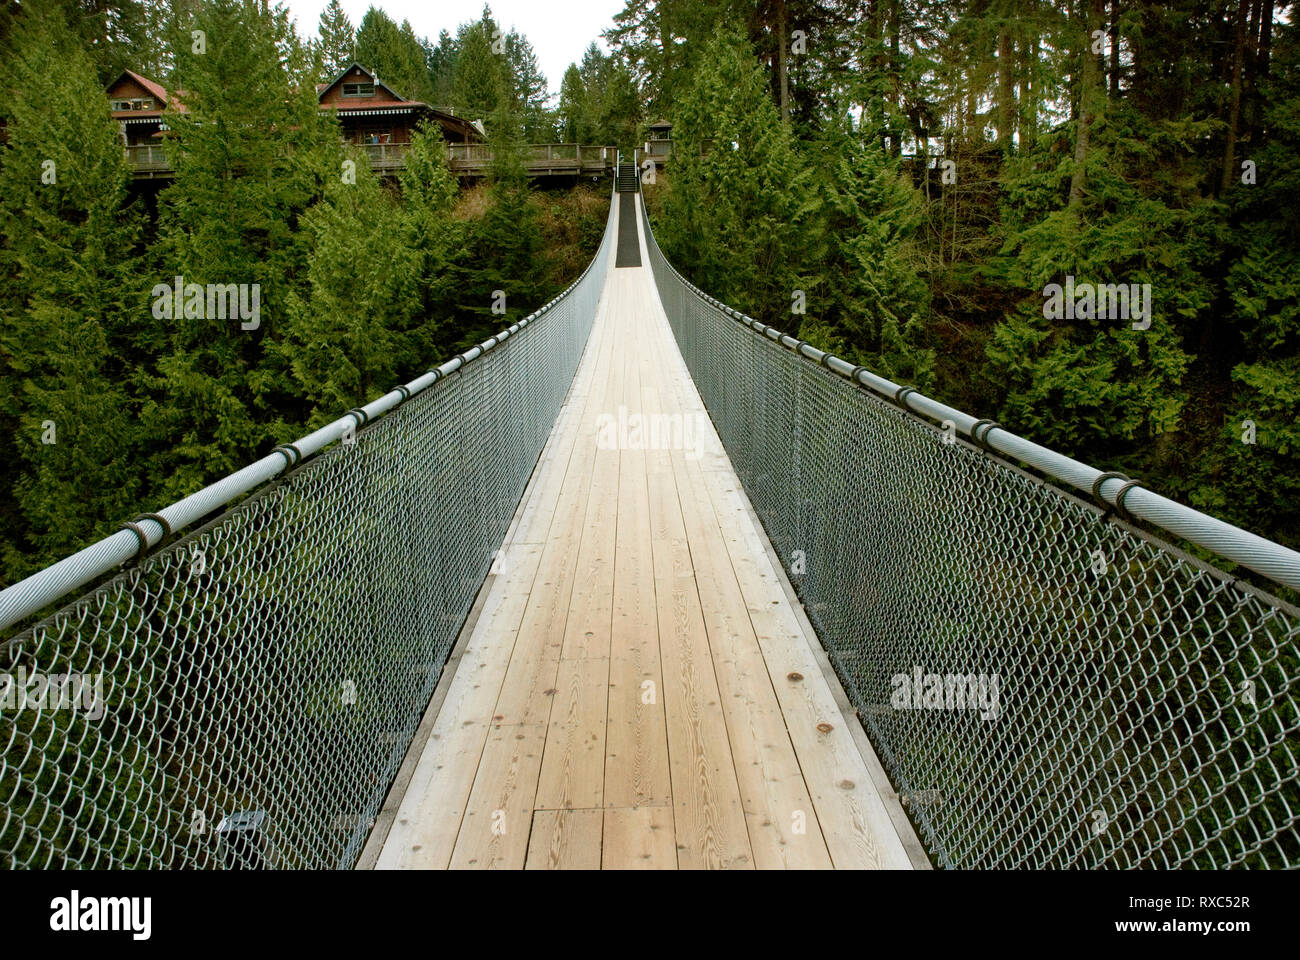 Capilano Suspension Bridge, Vancouver, British Columbia, Canada Stock Photo